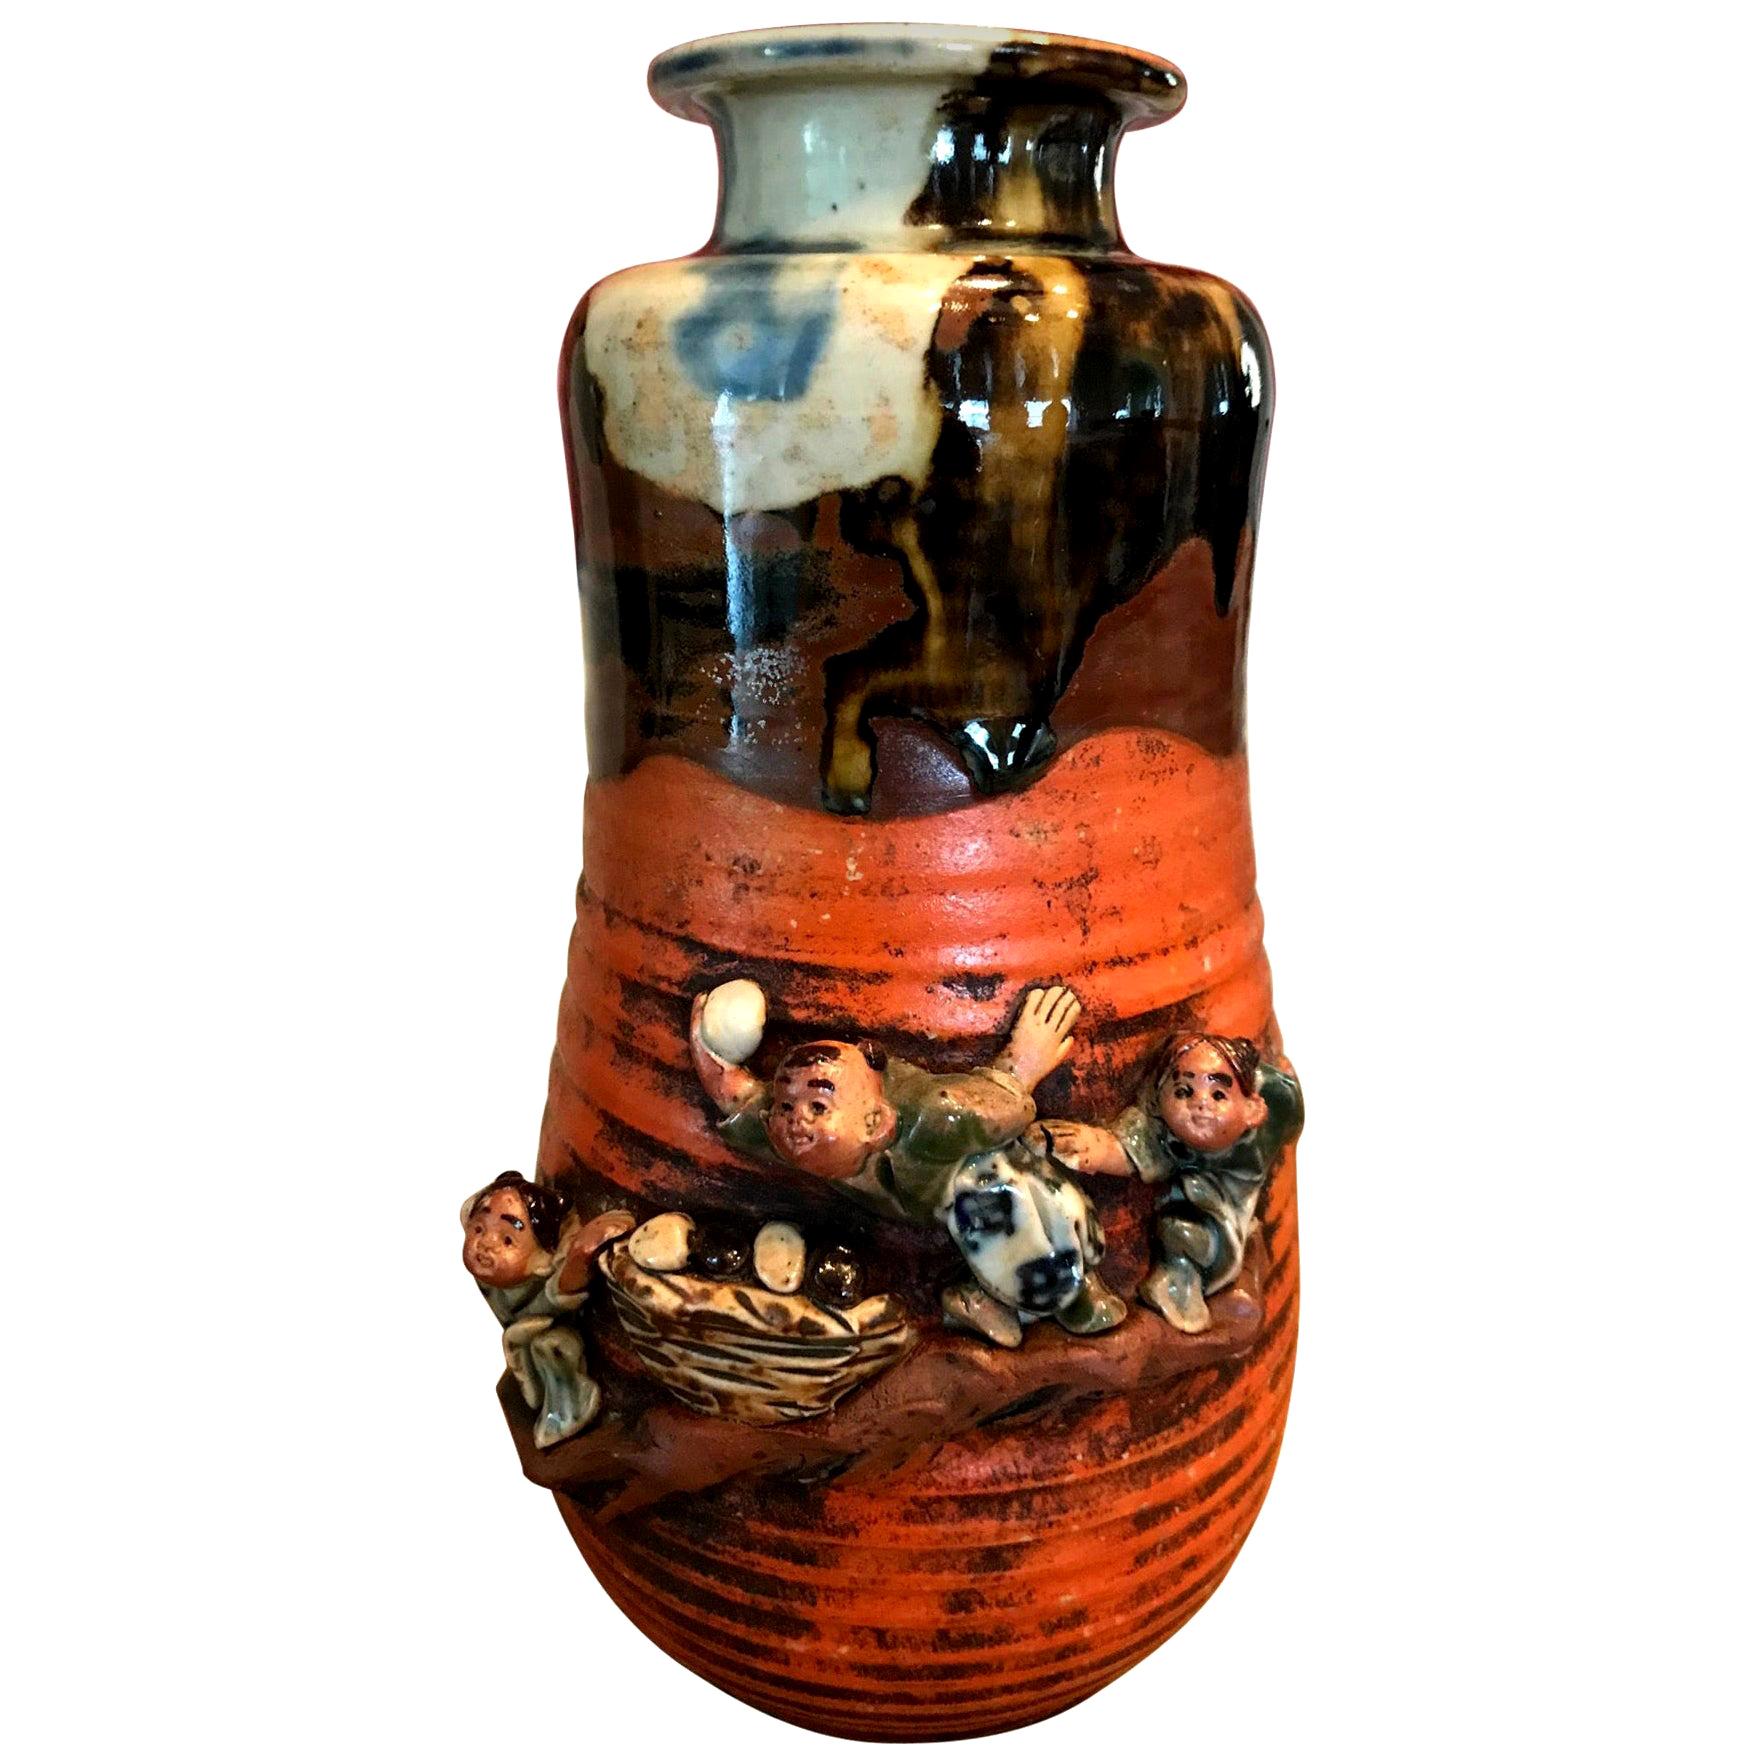 Sumida Gawa Signed Japanese Pottery Ceramic Glazed Vase, Early 1900s